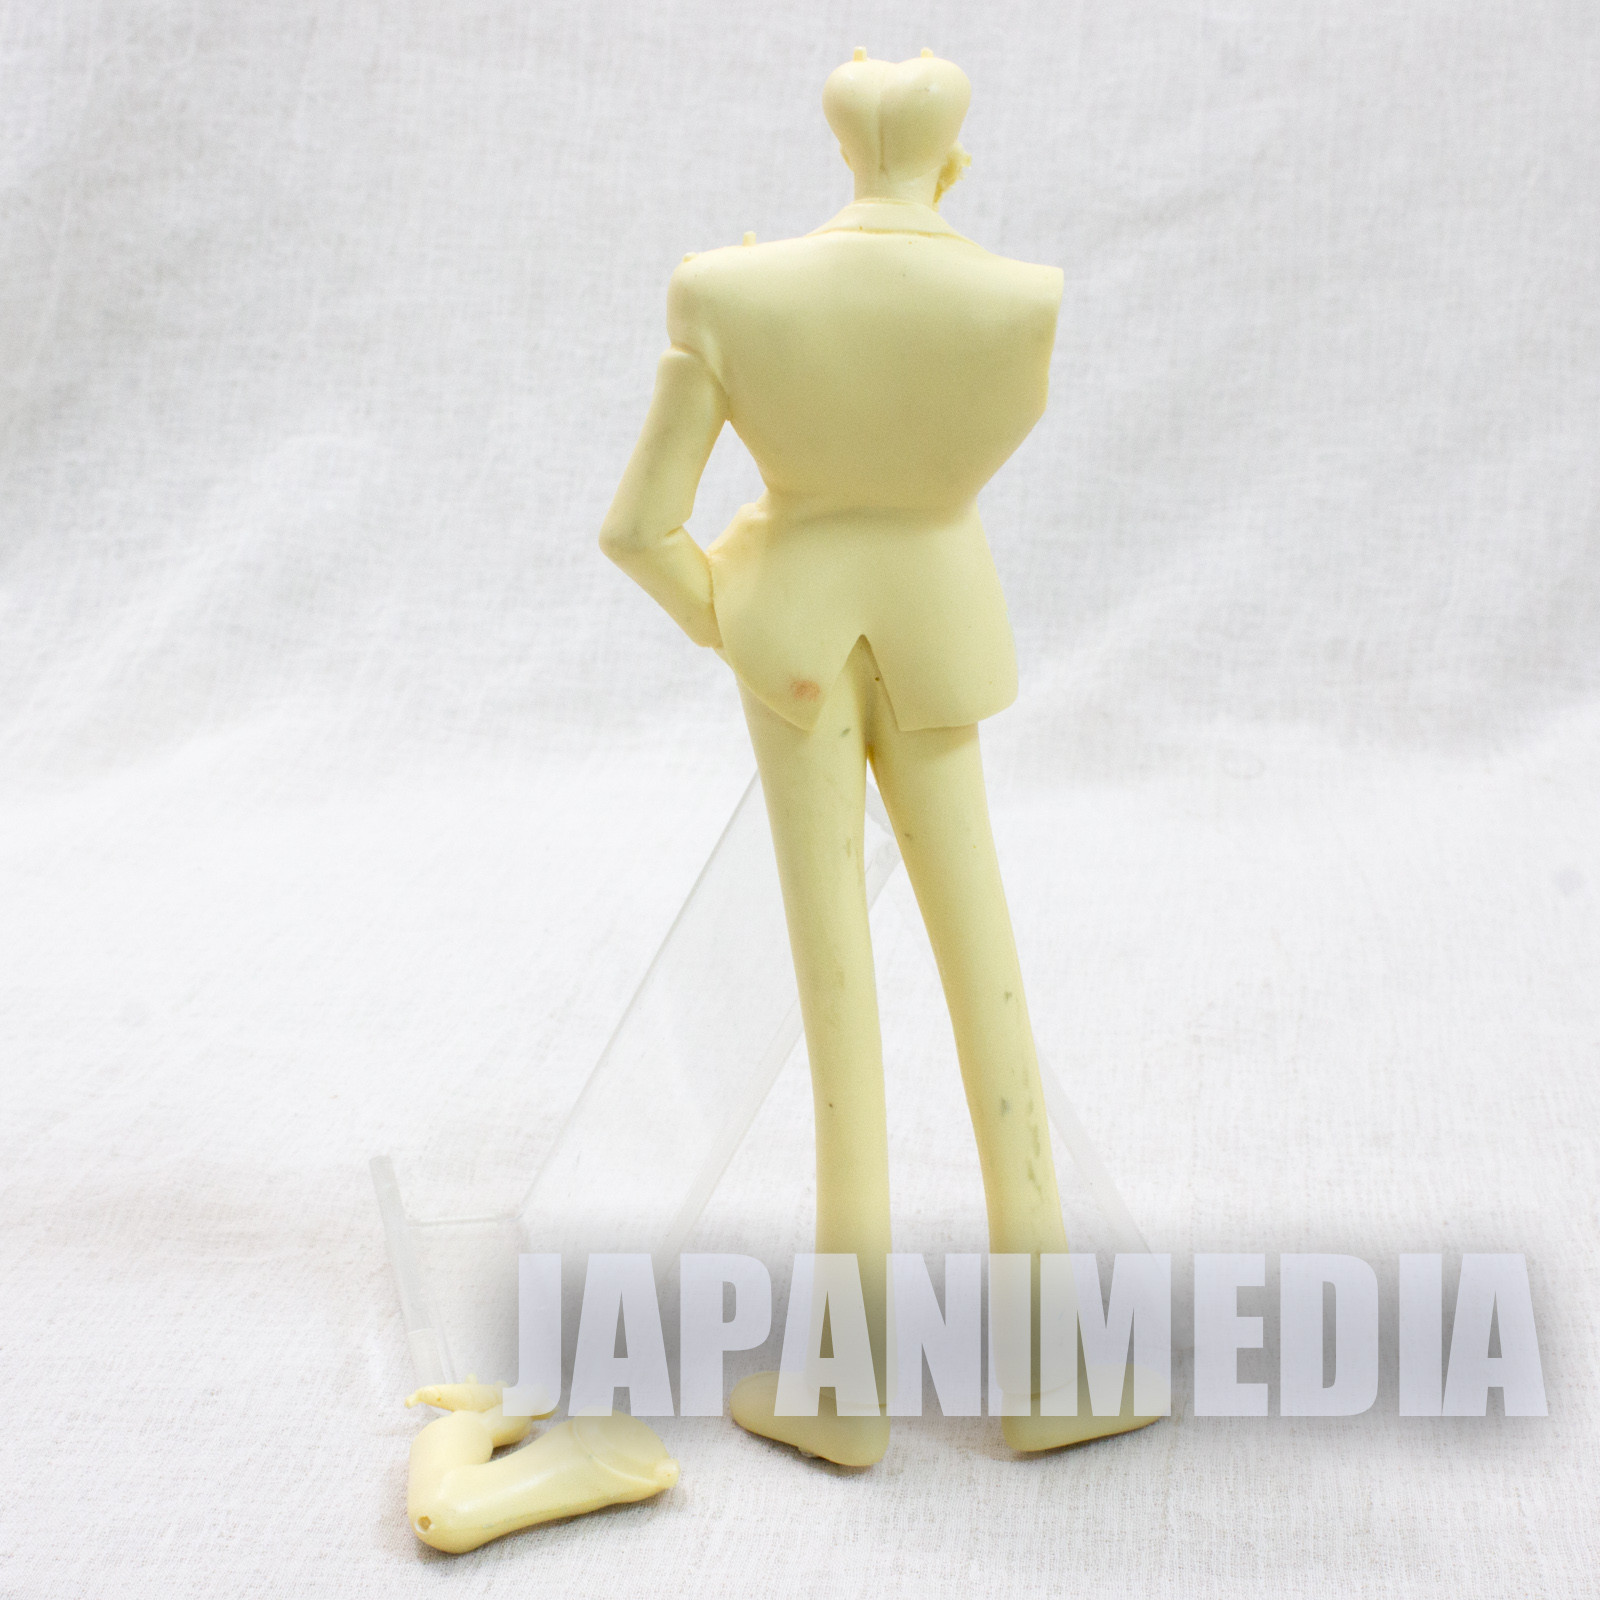 RARE! Giant Robo Arbert Resin Cast Model Kit Heavy Gauge JAPAN ANIME